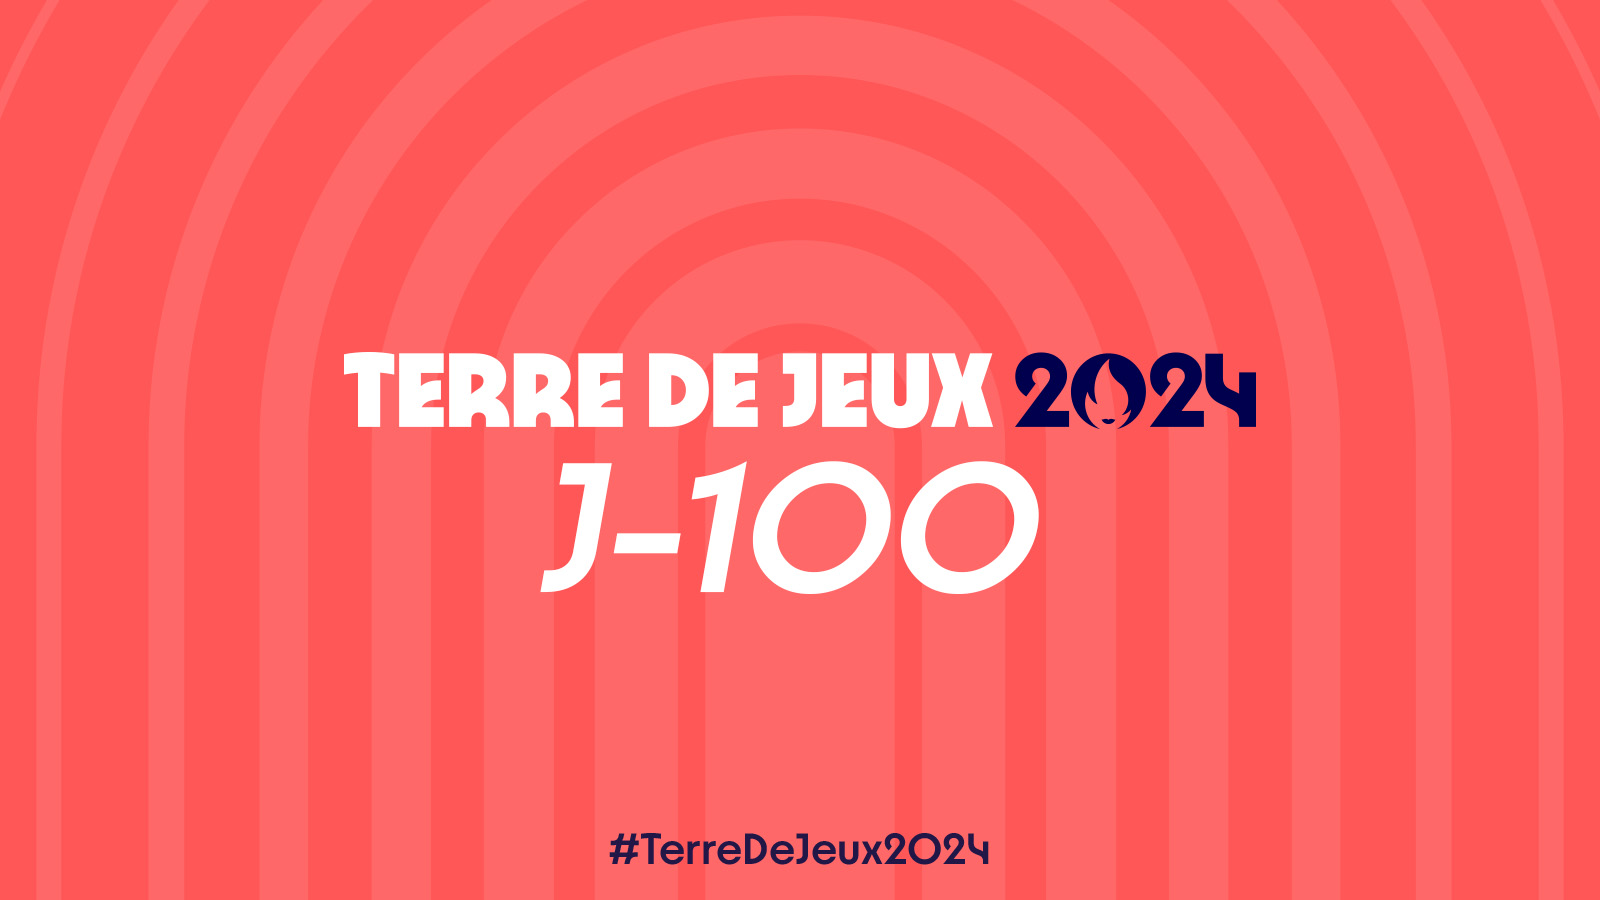 VOSGES TERRE DE JEUX 2024 -: J-100